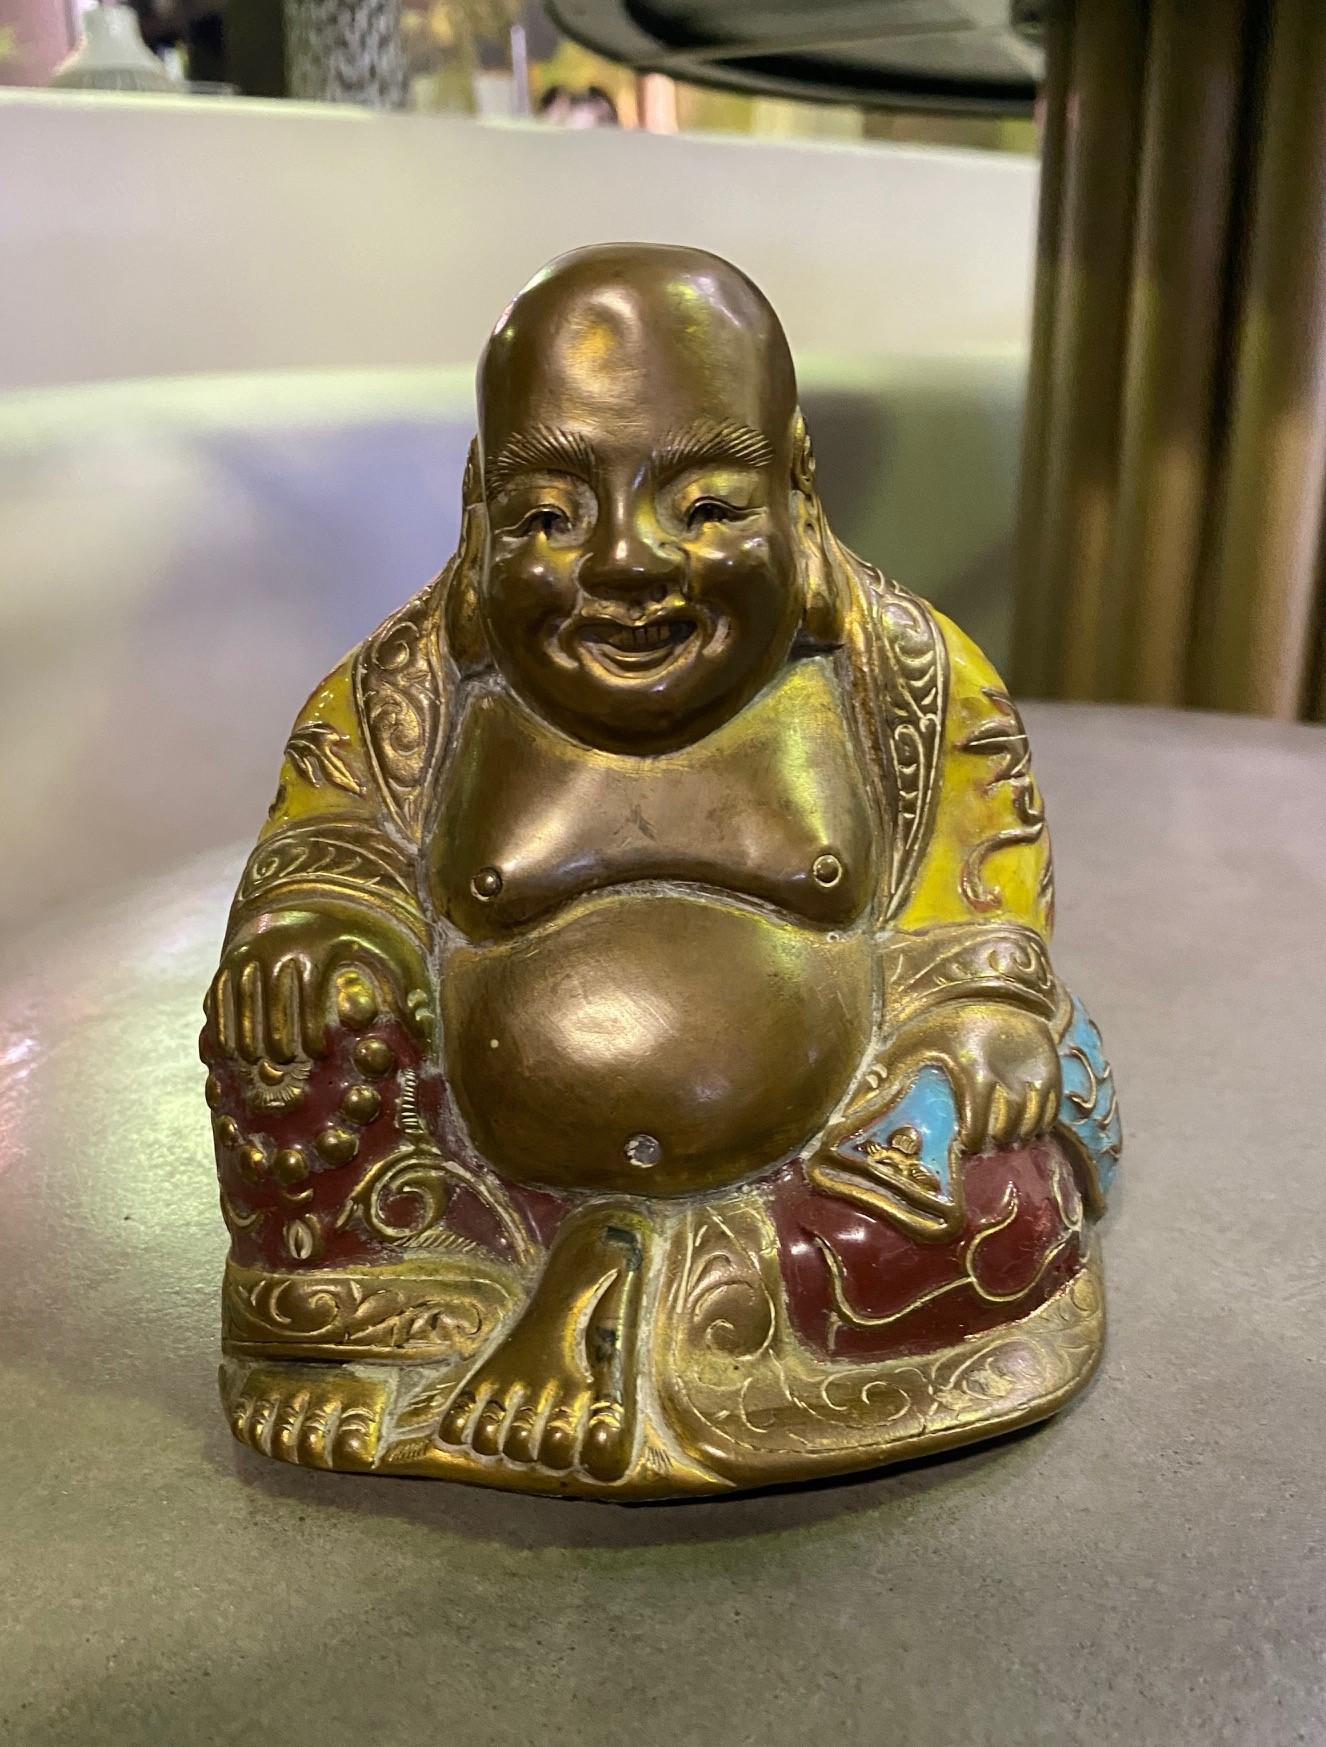 Ein lustiges Stück. Schön handbemalt und detailliert. Hergestellt aus einer Art Leichtmetall. 

Wurde aus einer Sammlung von chinesischen und südostasiatischen Artefakten und Buddhas erworben.

Ein schönes Stück zur Ergänzung Ihrer Sammlung.